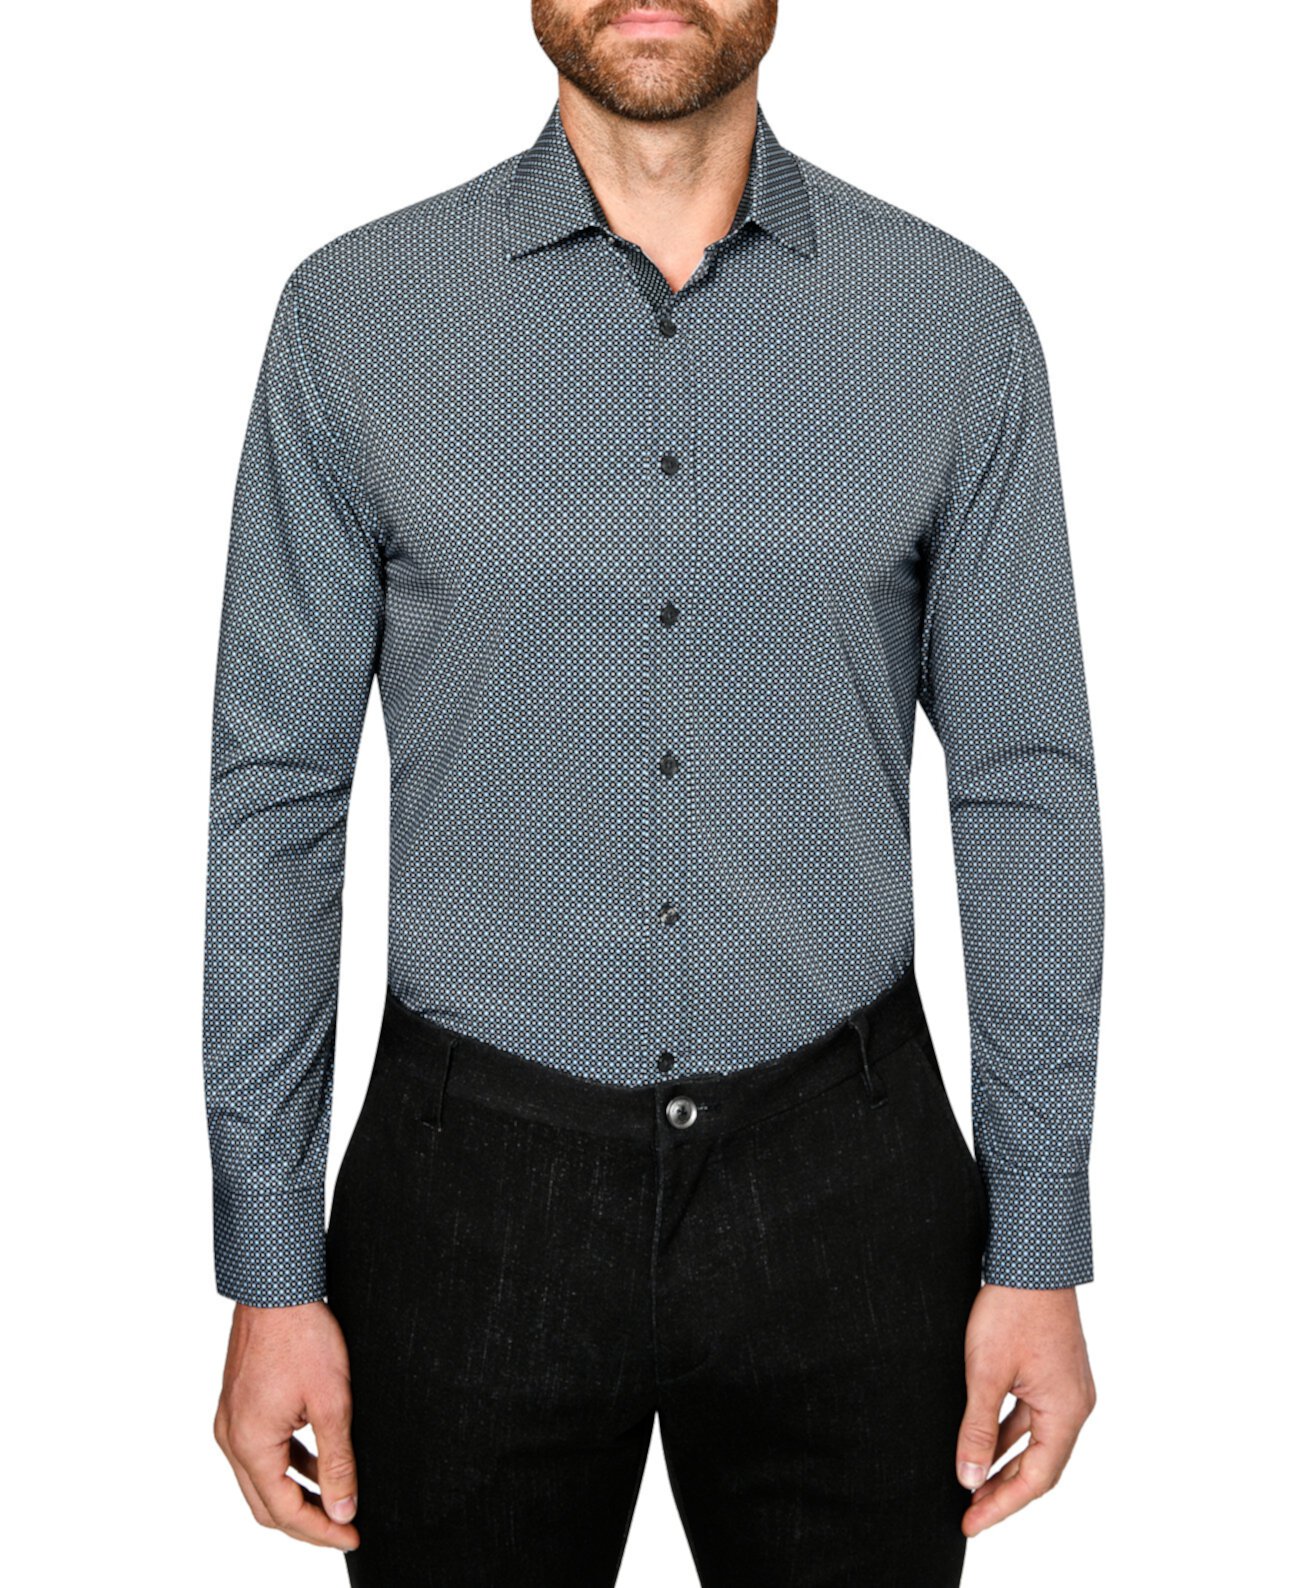 Мужская приталенная классическая рубашка с геометрическим принтом и эластичным принтом без железа Society of Threads